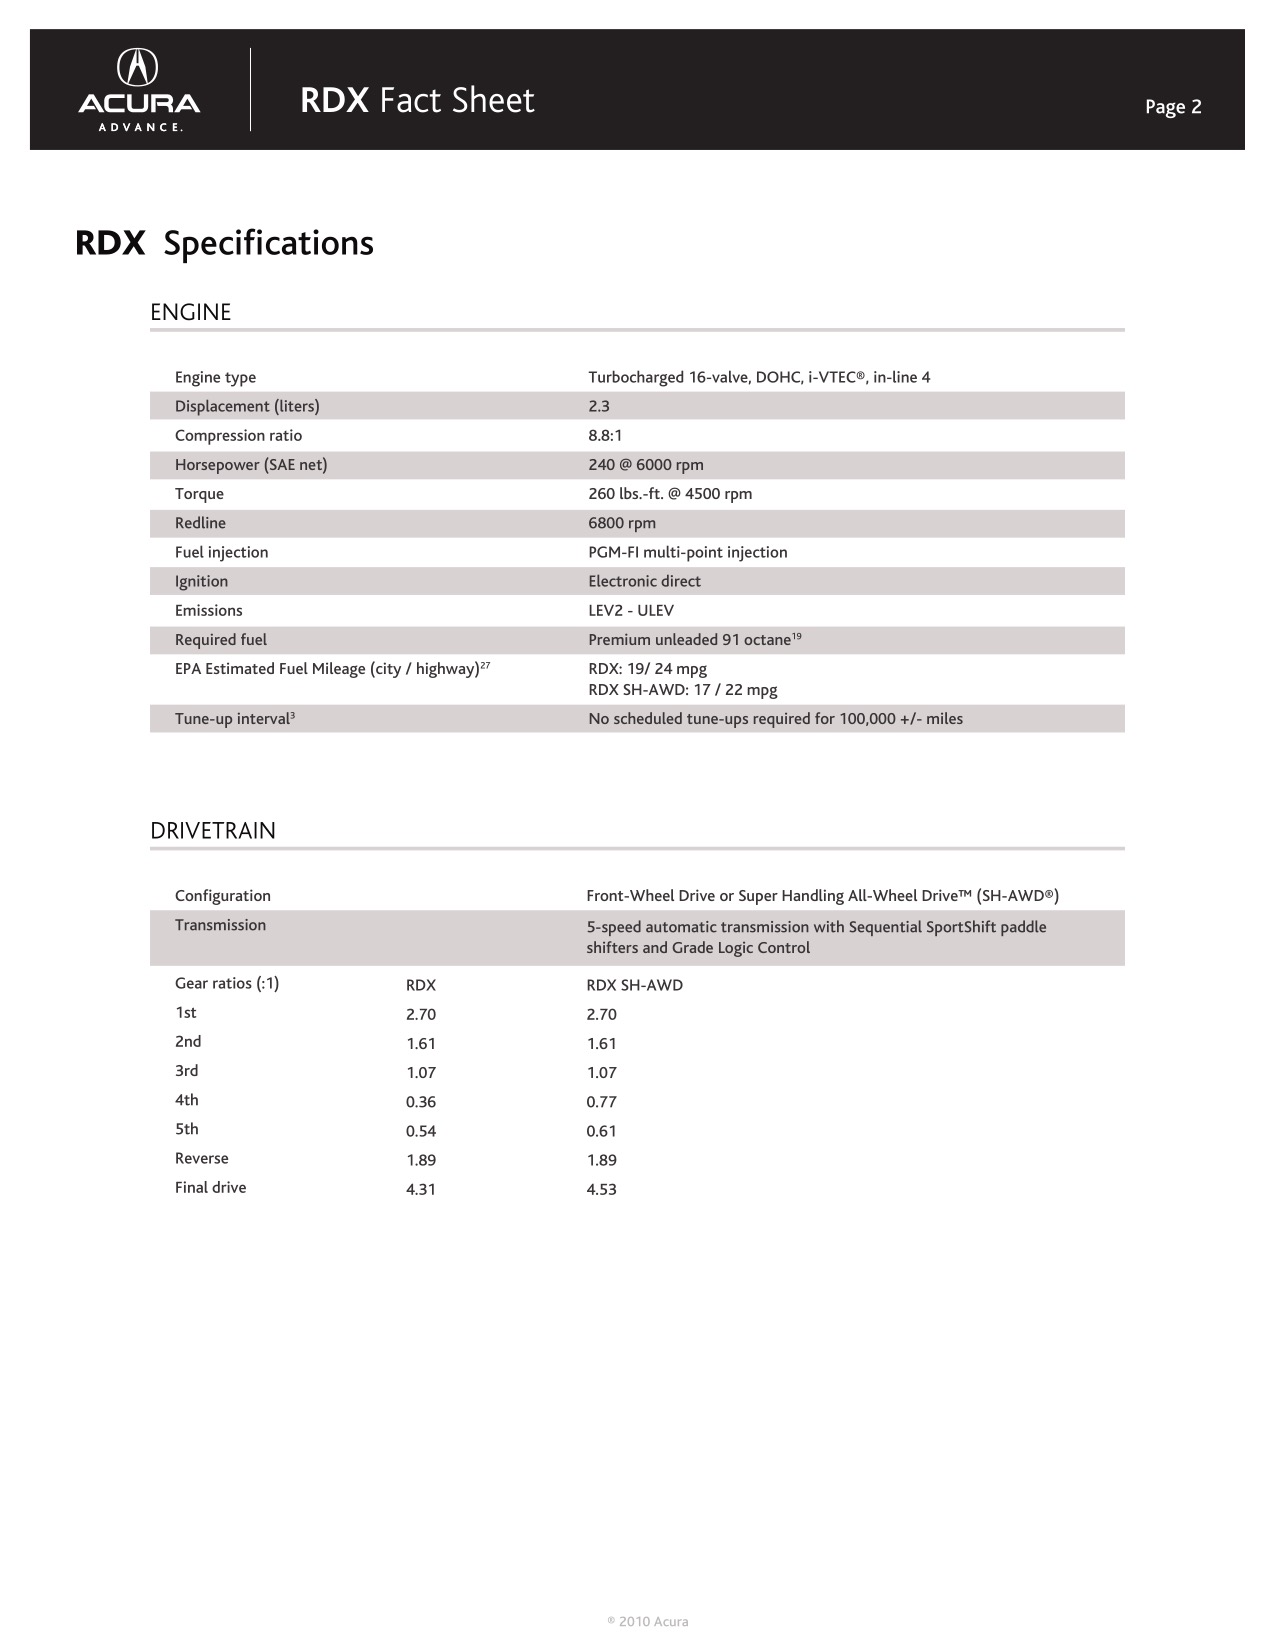 2010 Acura RDX Brochure Page 22